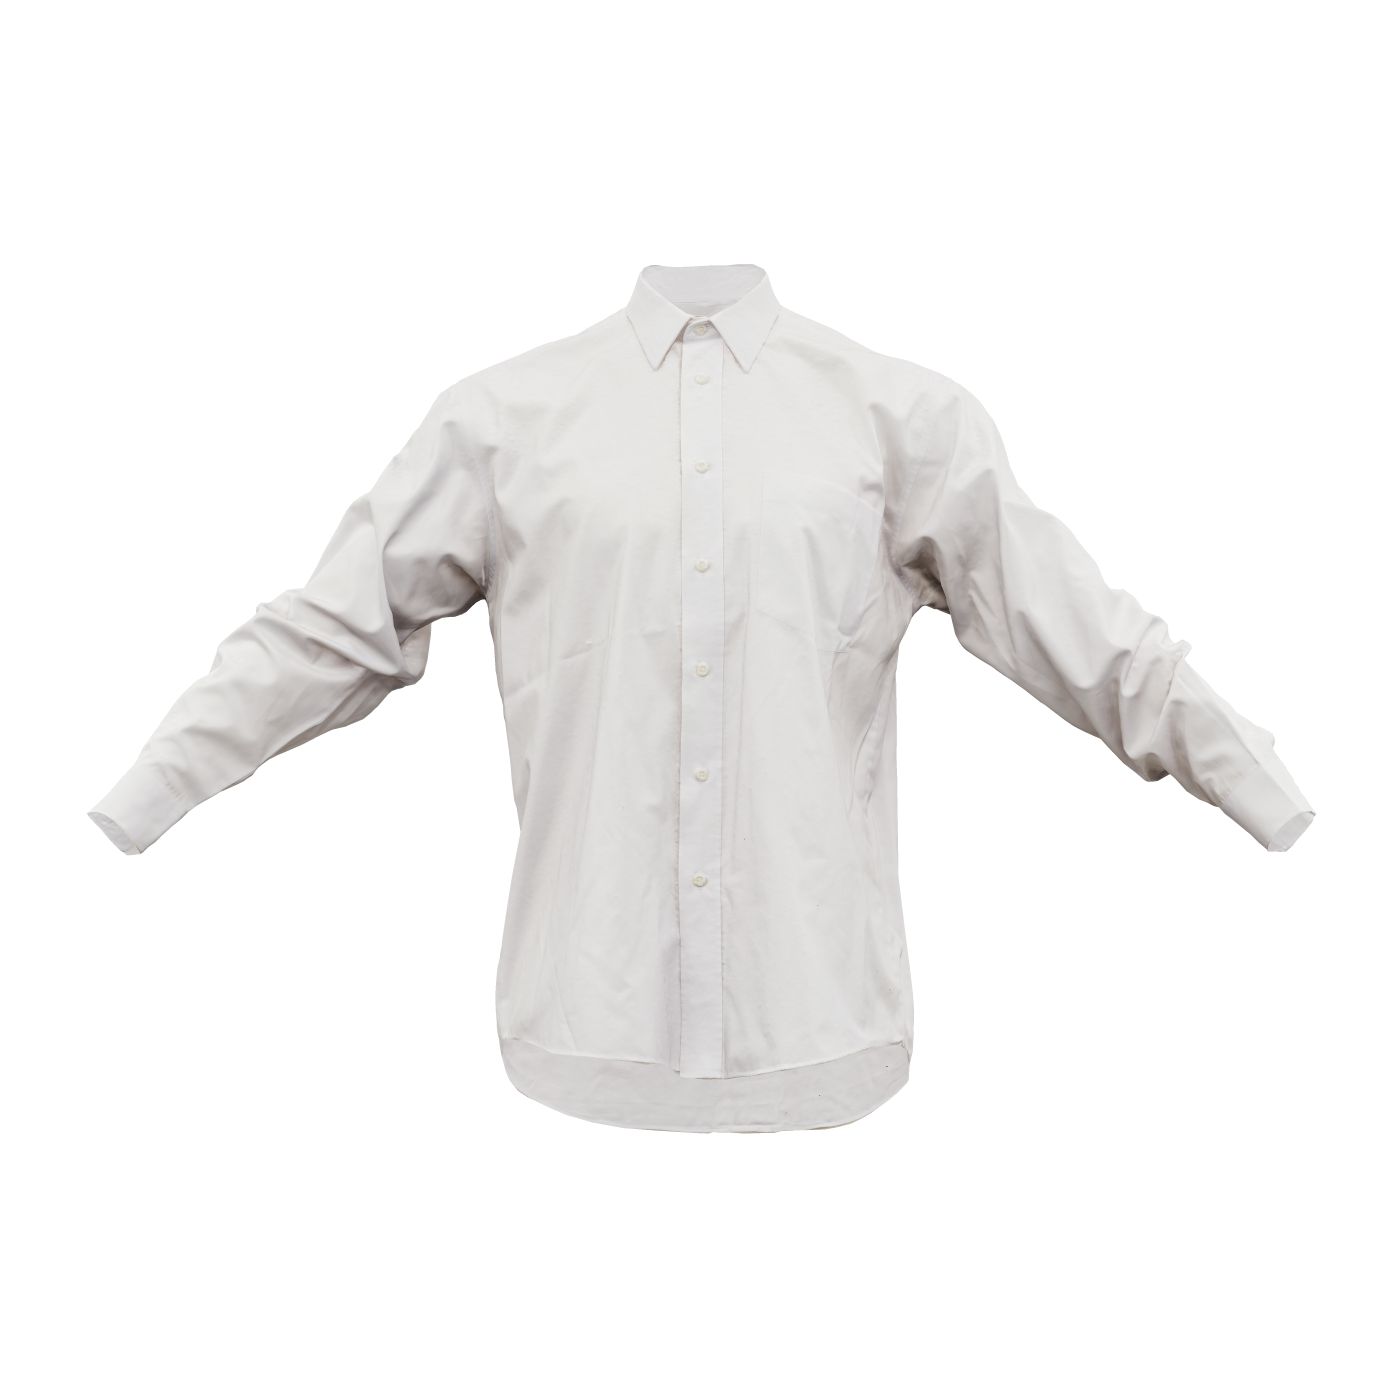 Shirt Plain Buttoned Up